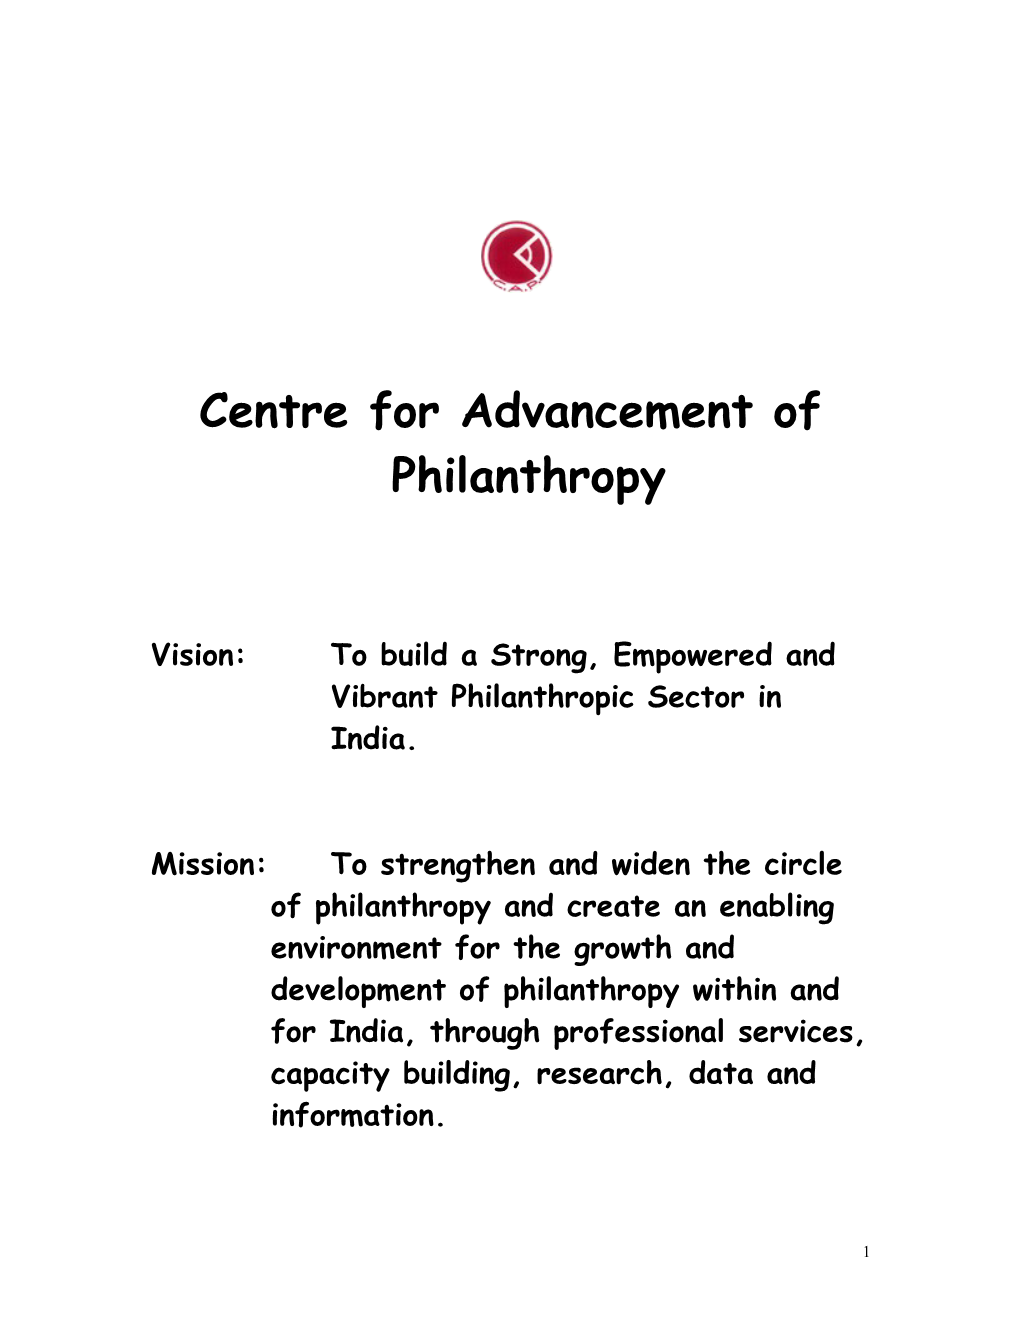 The Centre for Advancement of Philanthropy (Est